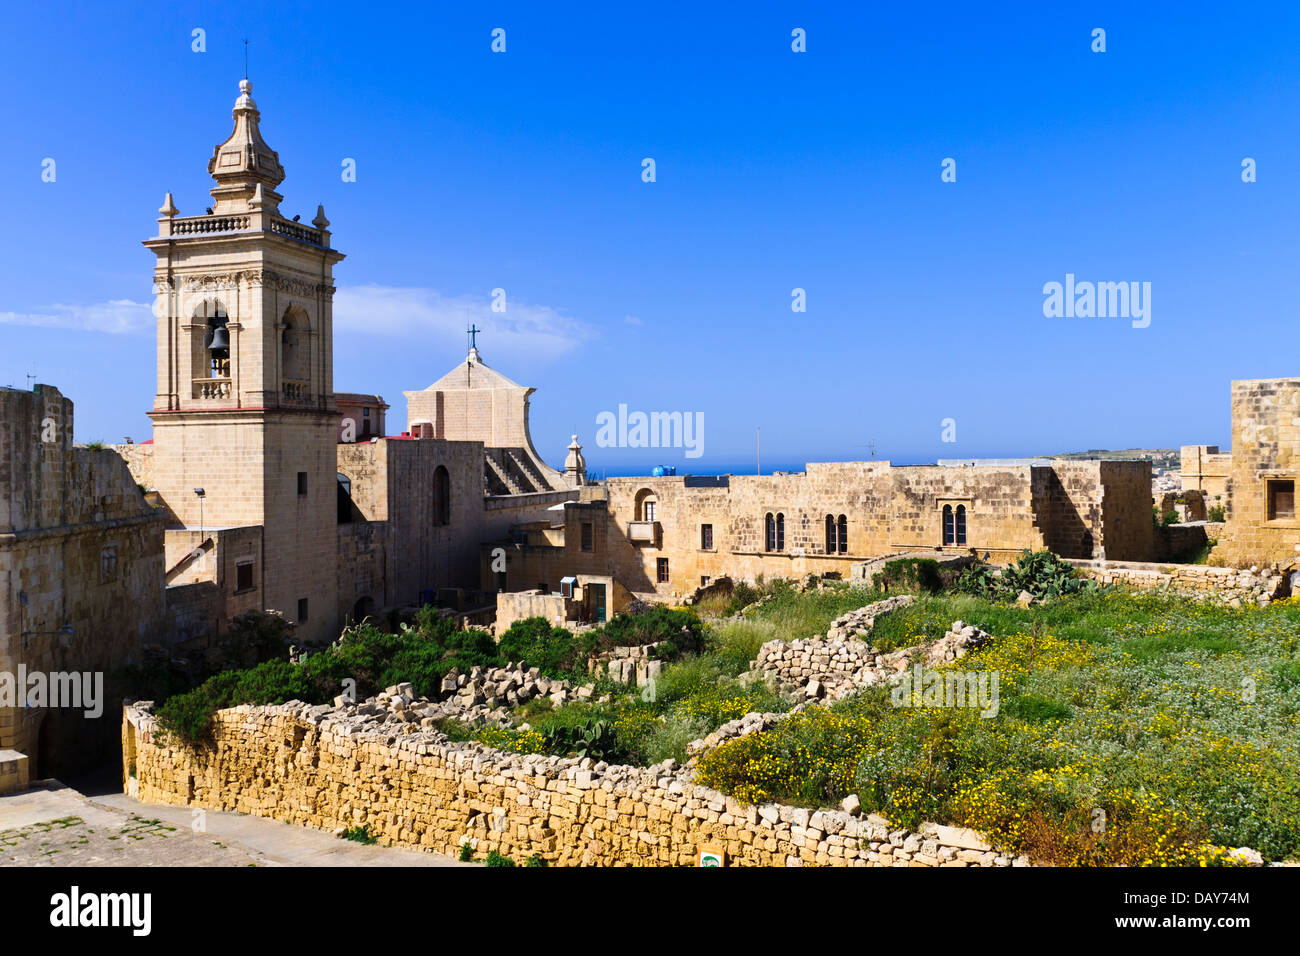 Die Kathedrale Mariä Himmelfahrt in der alten Zitadelle von Victoria (Rabat), Gozo, Malta. Stockfoto